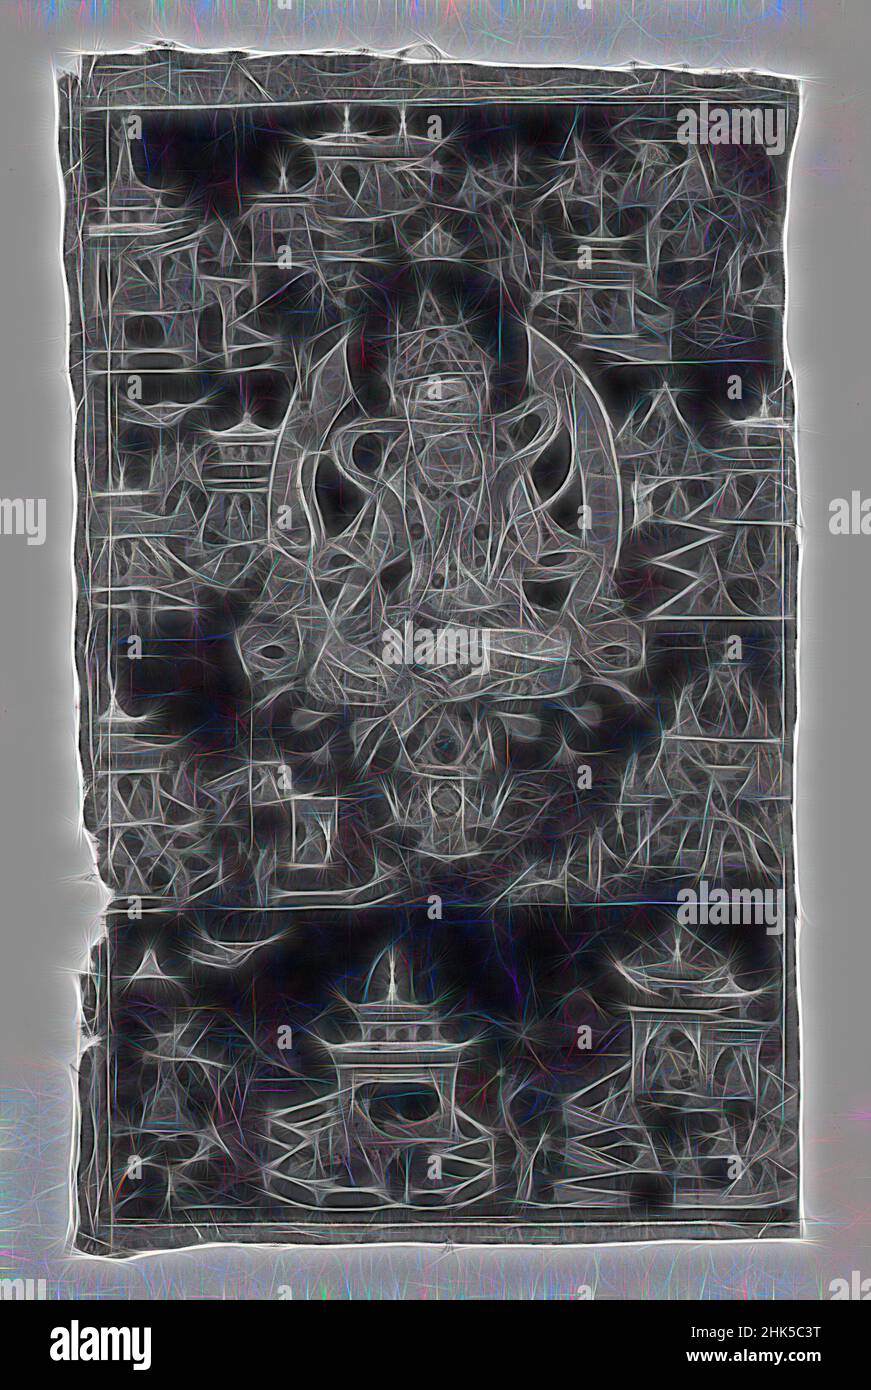 Inspiriert von Beschützer der Sakya-pa Sekte, blickdichte Aquarelle auf grober Leinwand, Tibet, 19th. Jahrhundert, 27 1/8 x 16 1/2 Zoll, 68,9 x 41,9 cm, neu erfunden von Artotop. Klassische Kunst neu erfunden mit einem modernen Twist. Design von warmen fröhlichen Leuchten der Helligkeit und Lichtstrahl Strahlkraft. Fotografie inspiriert von Surrealismus und Futurismus, umarmt dynamische Energie der modernen Technologie, Bewegung, Geschwindigkeit und Kultur zu revolutionieren Stockfoto